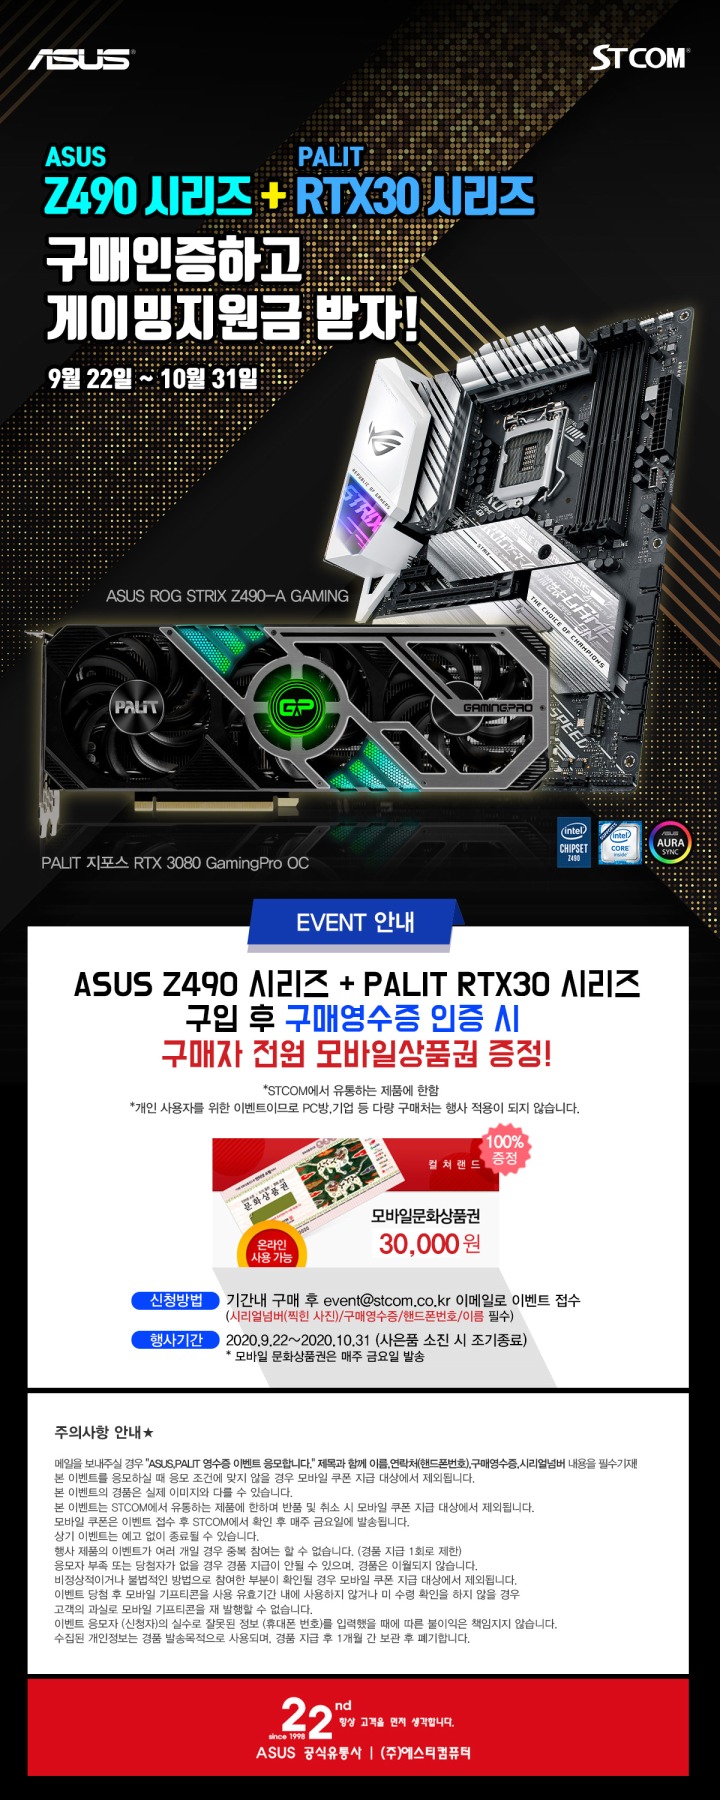 [보도자료 이미지] ASUS Z490 메인보드 시리즈 PALIT RTX 30 그래픽카드 시리즈 구매 인증하면 게이밍 지원금 증정 이벤트!.jpg